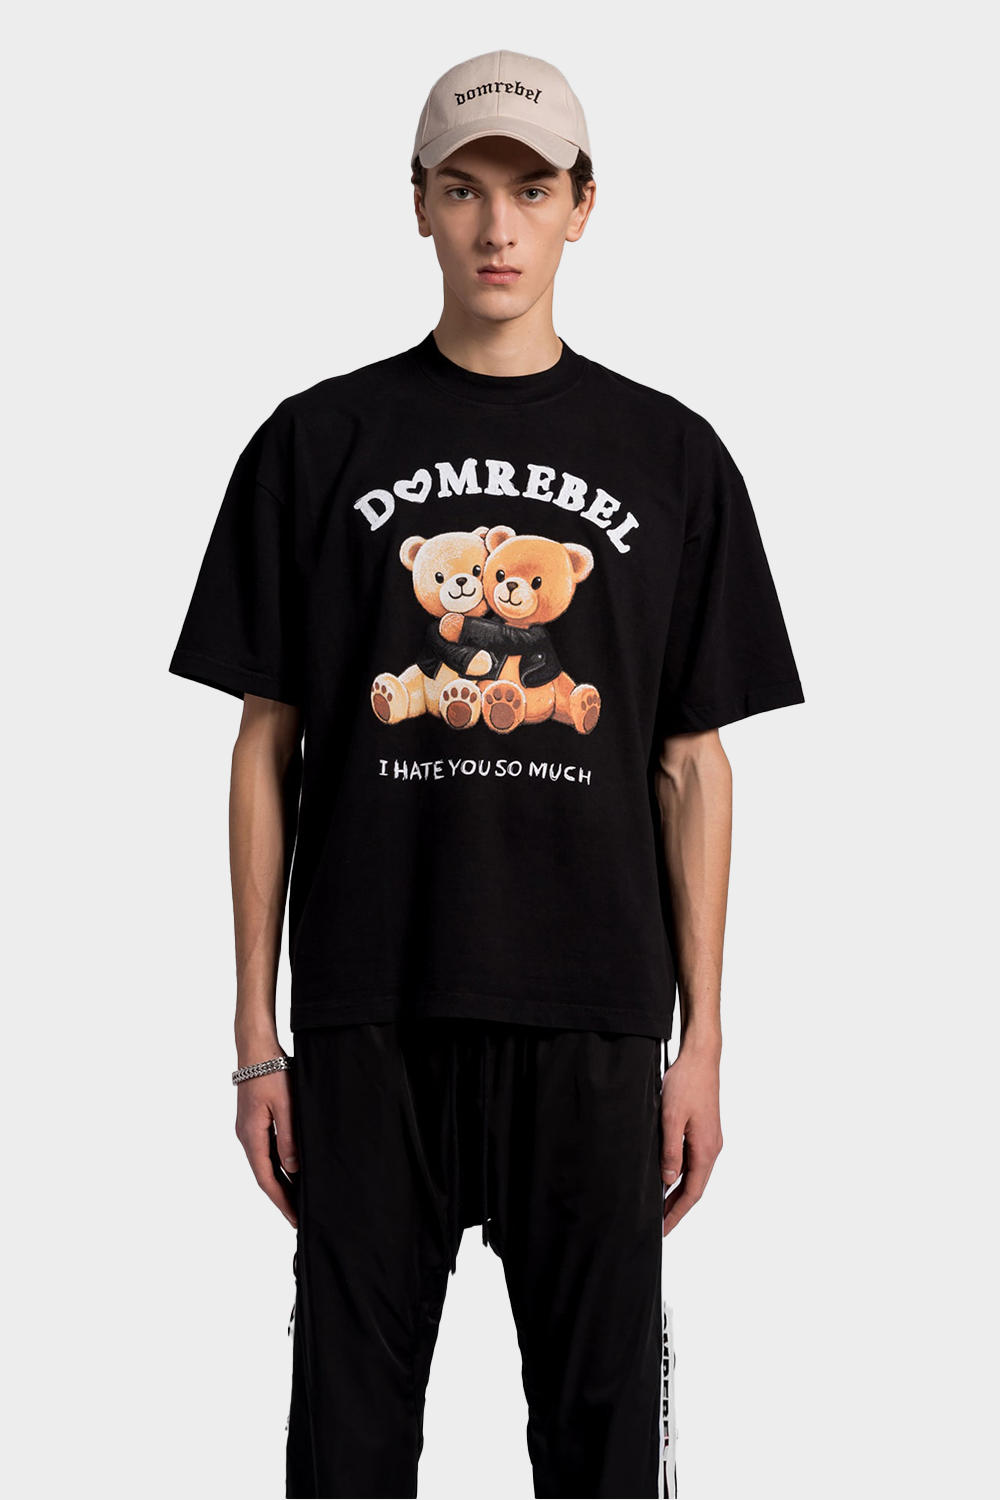 חולצת טי שירט לגברים הדפס דובים DOMREBEL Vendome online | ונדום .